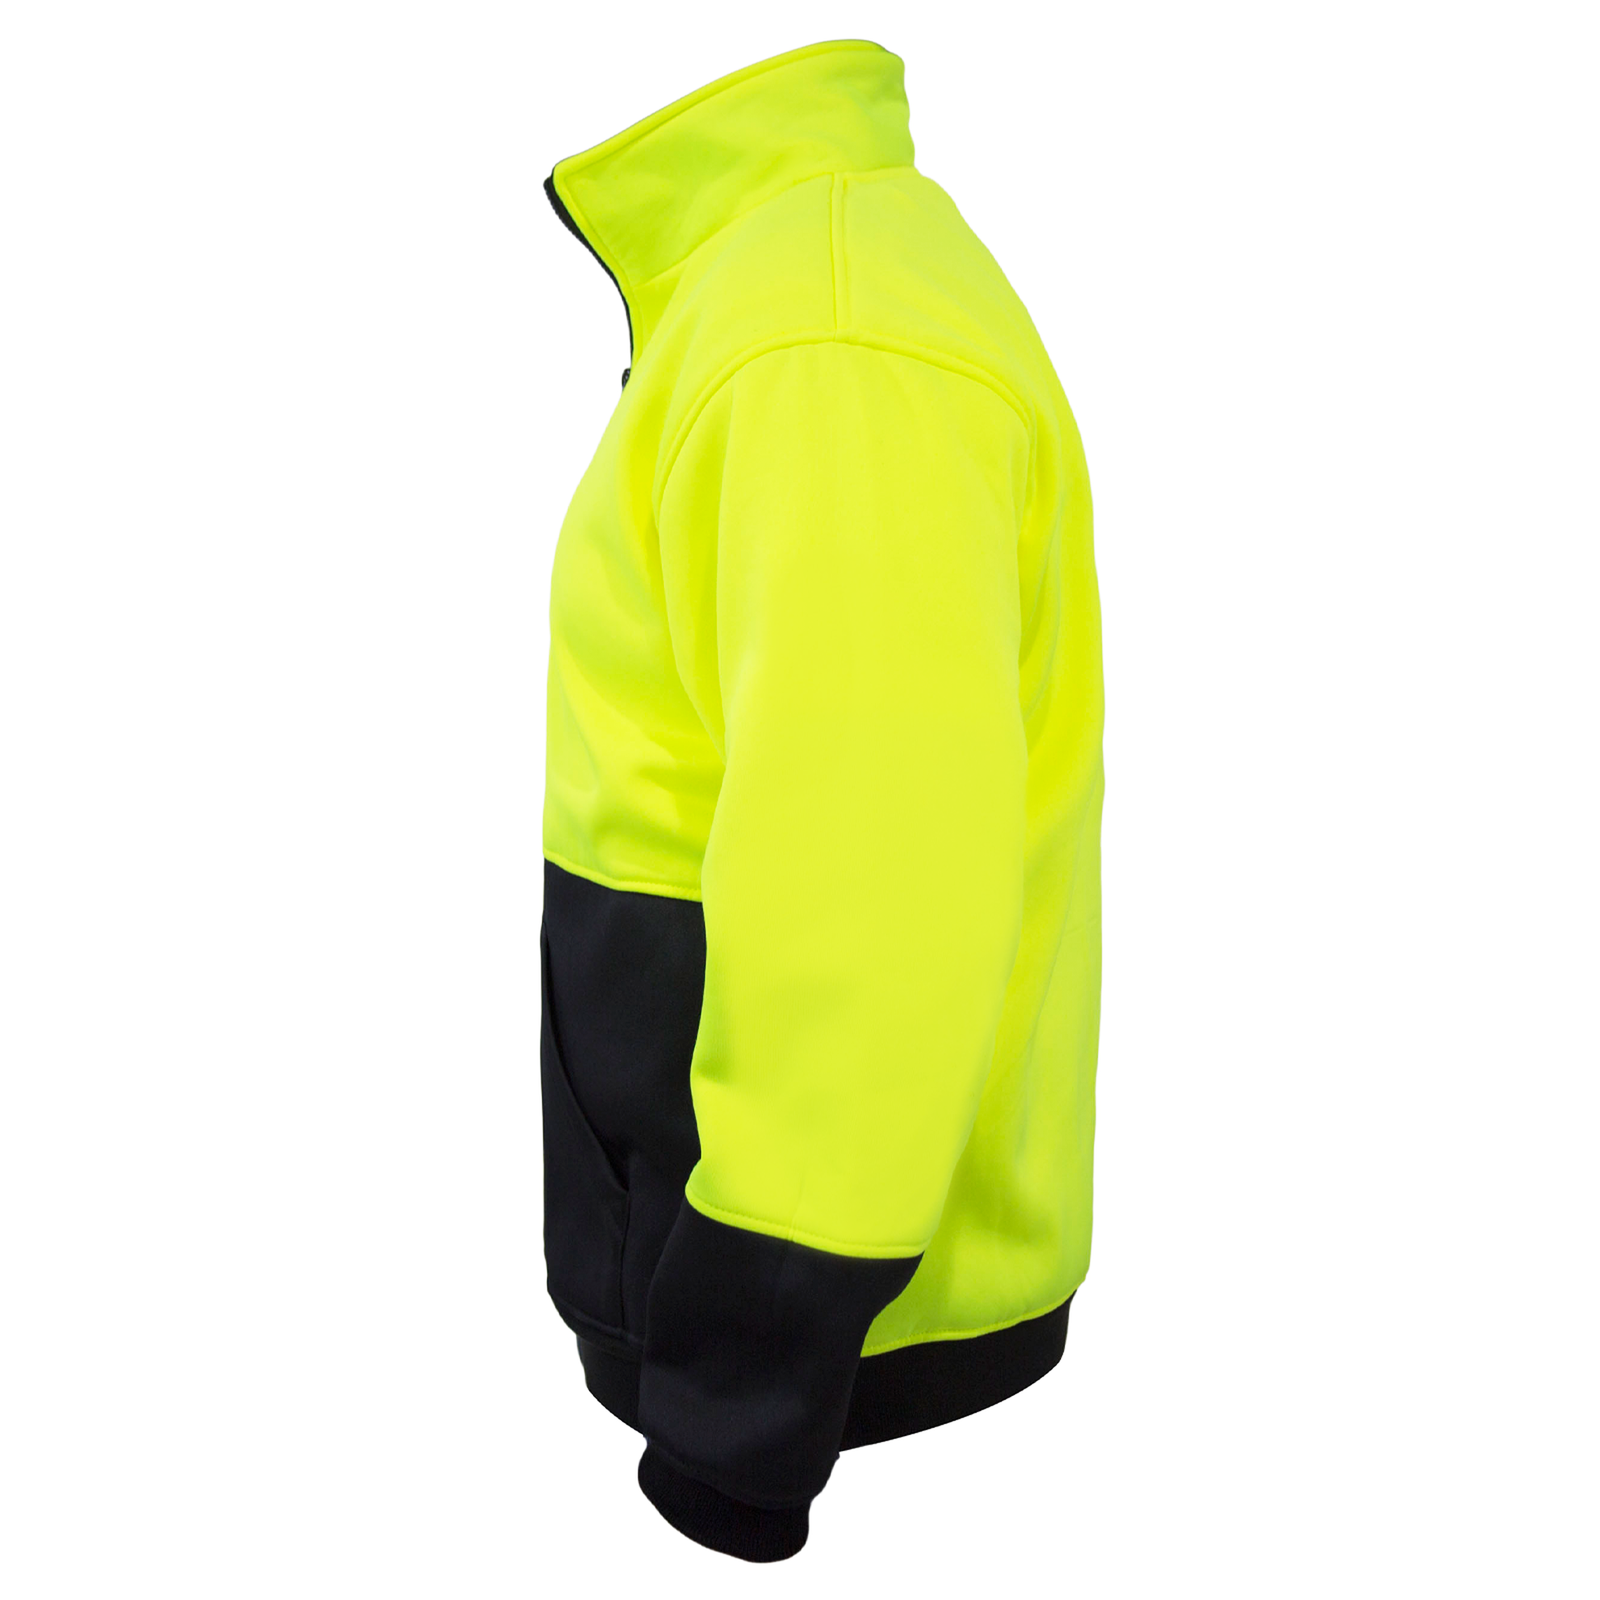 Side view of the hi-vis Yellow black JORESTECH sweatshirt with half zipper